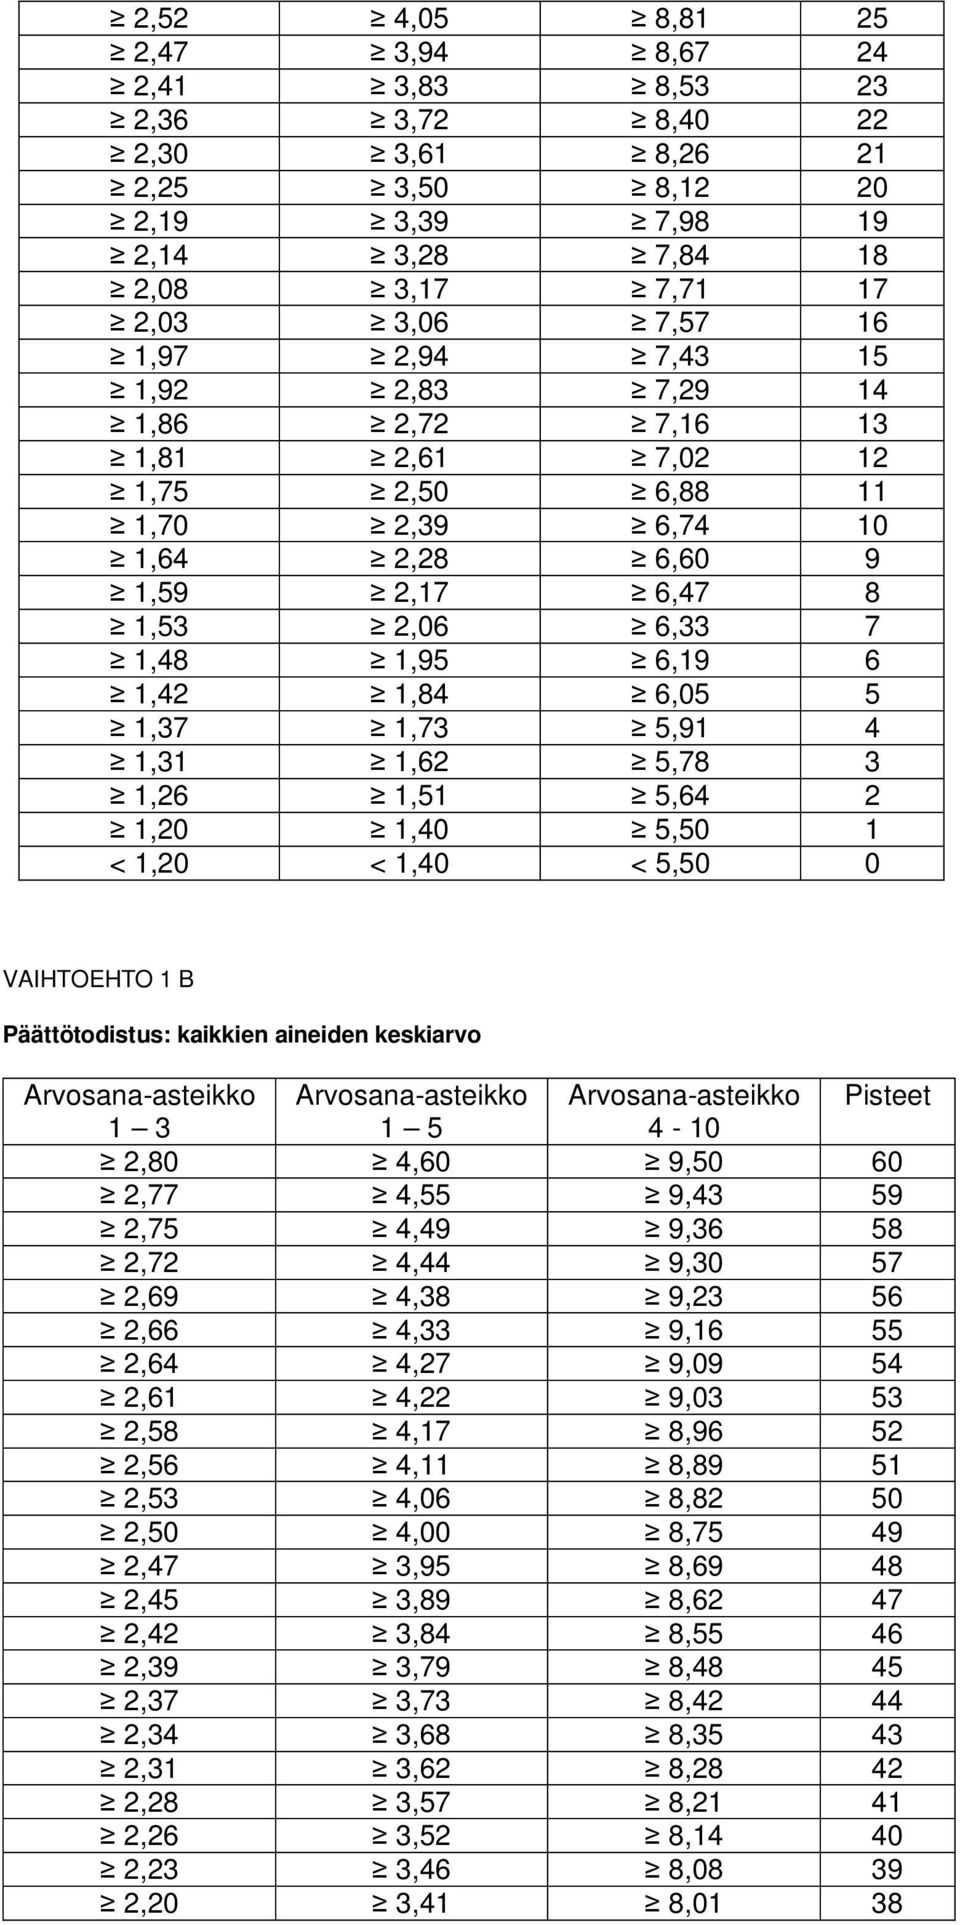 1,62 5,78 3 1,26 1,51 5,64 2 1,20 1,40 5,50 1 < 1,20 < 1,40 < 5,50 0 VAIHTOEHTO 1 B Päättötodistus: kaikkien aineiden keskiarvo Arvosana-asteikko Arvosana-asteikko Arvosana-asteikko Pisteet 1 3 1 5